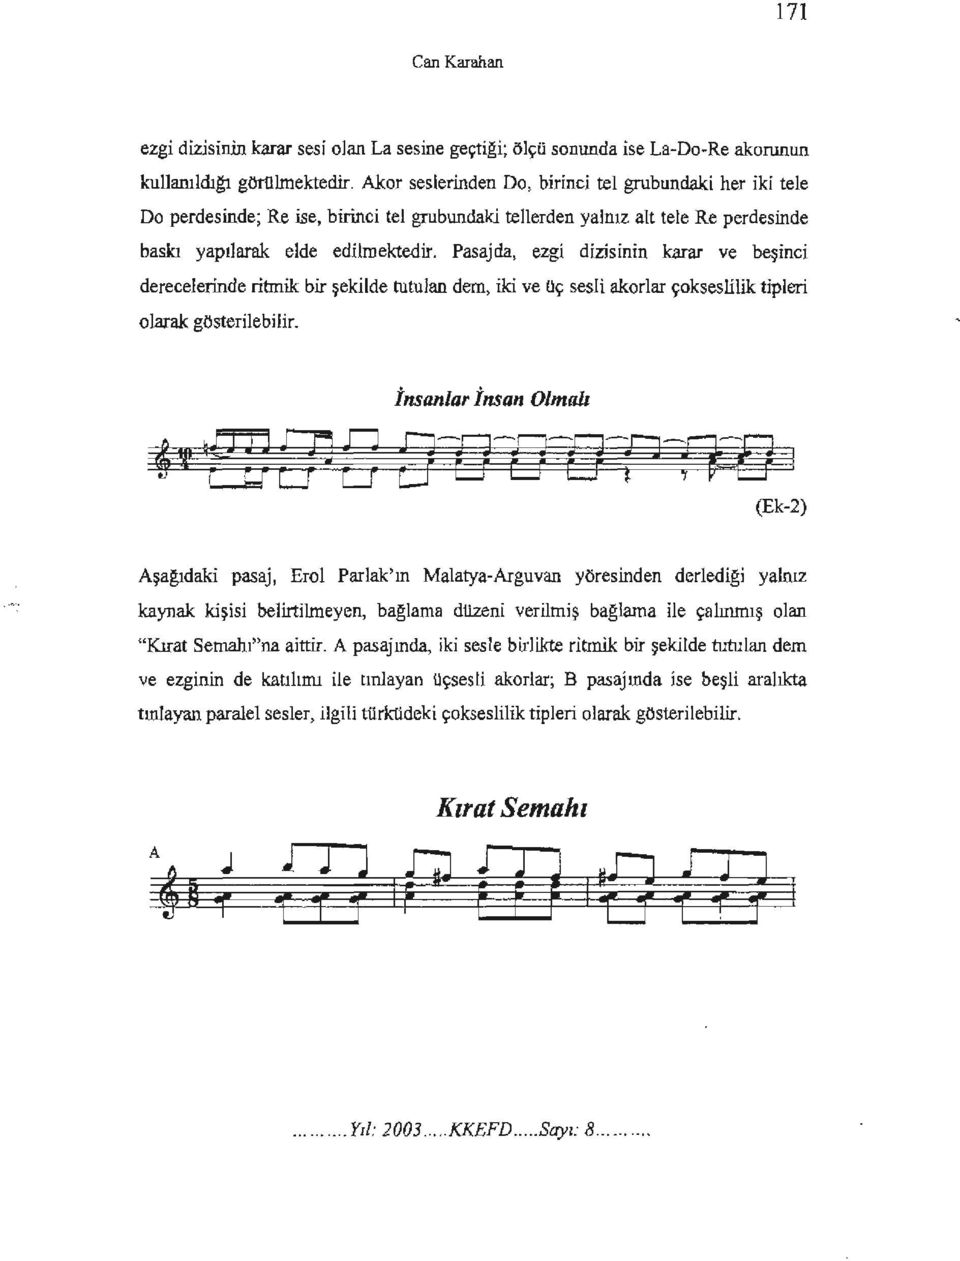 Pasajda, ezgi dizisinin karar ve beşinci derecelerinde ritmik bir şekilde tutulan dem, iki ve uç sesli akorlar çokseslilik tipleri olarak: gösterilebilir.